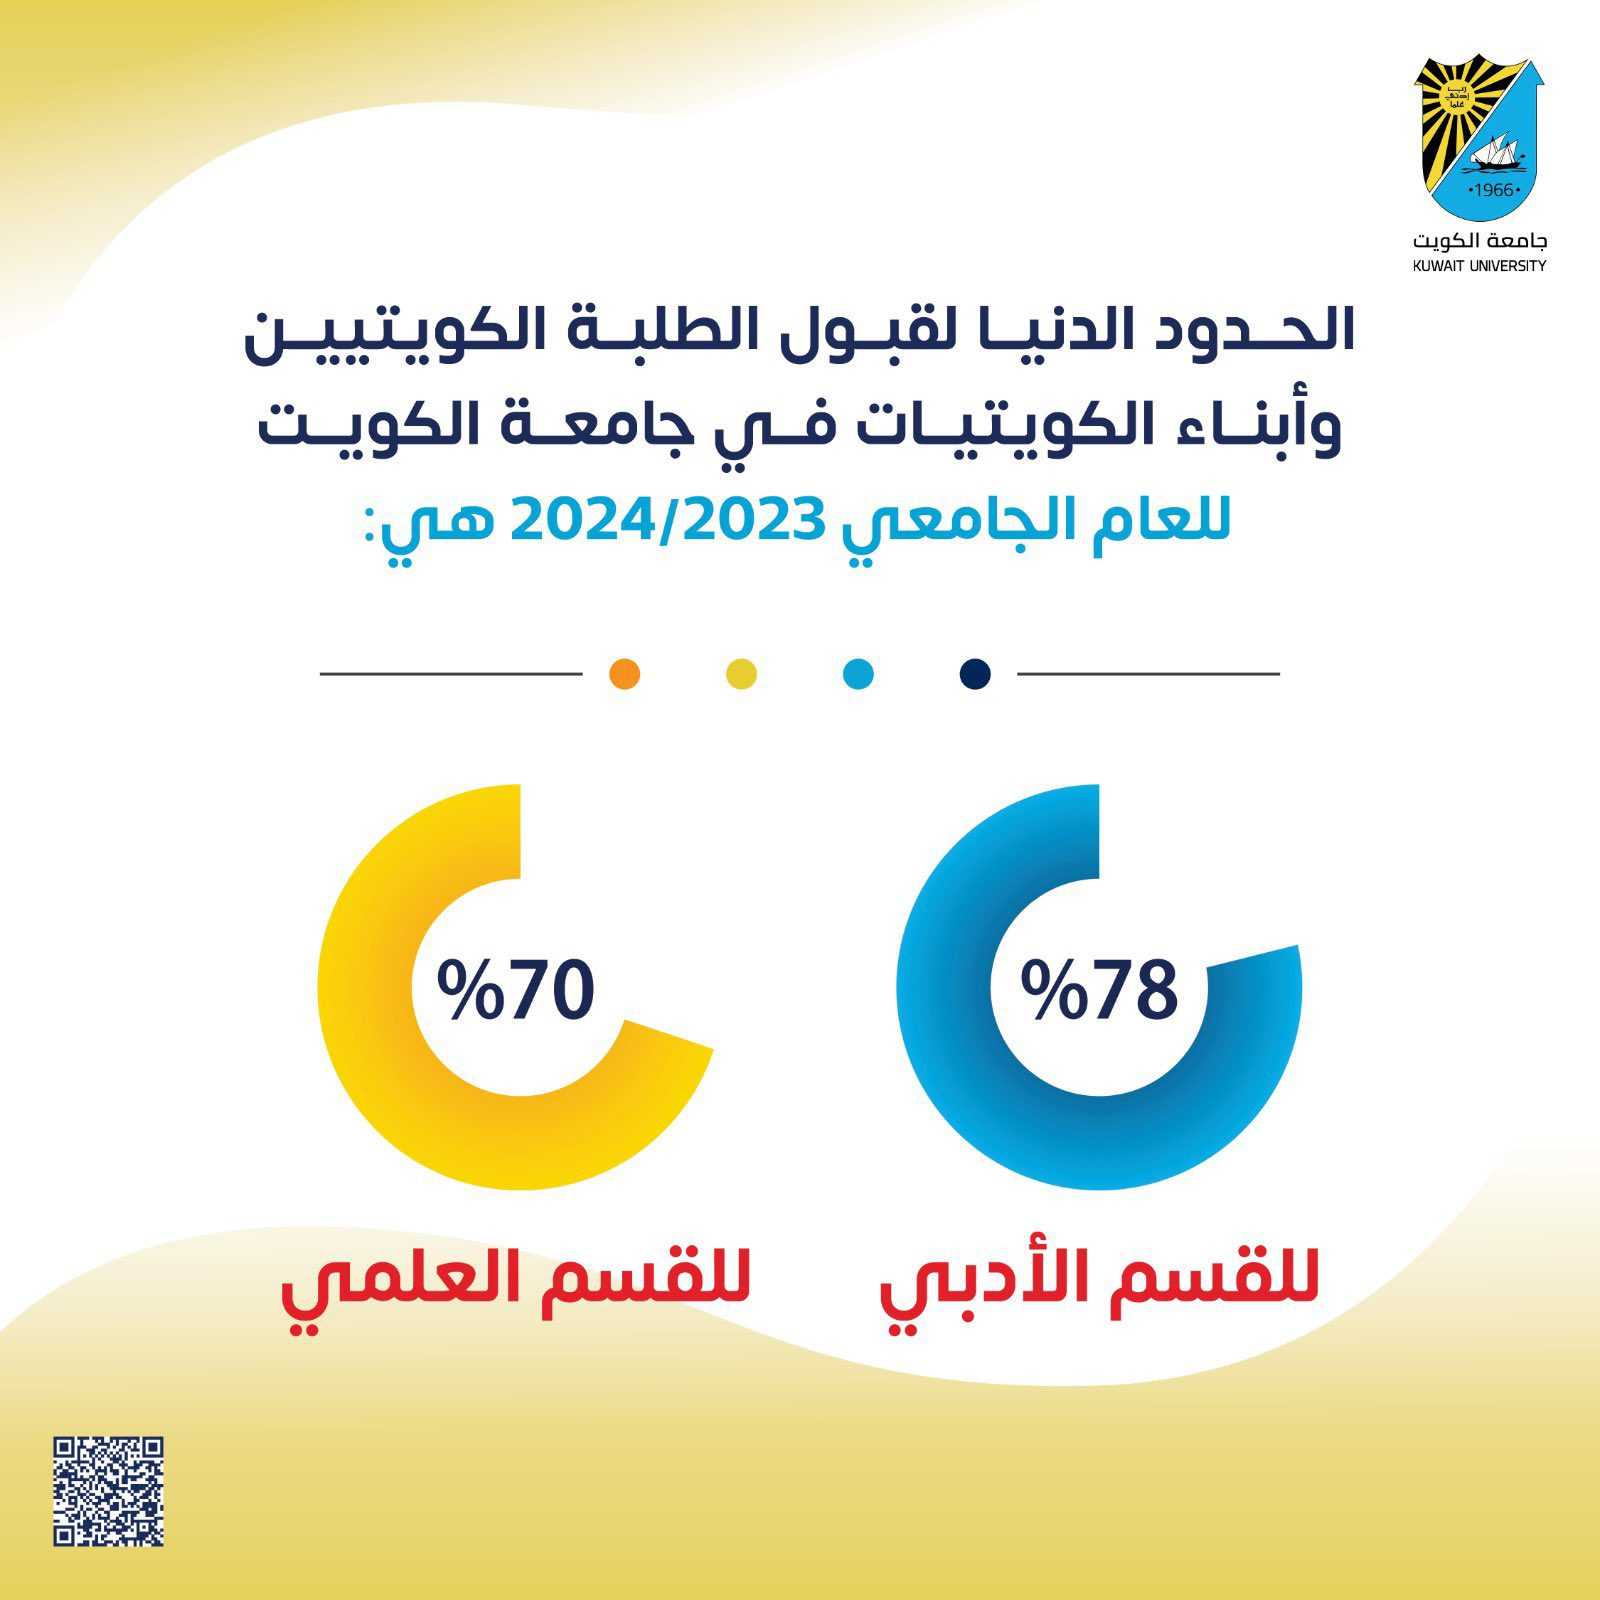 عماد القبول رابط تسجيل جامعة الكويت 2023 + 2024 بالخطوات الجديدة الحدود الدنيا ونسبة القبول